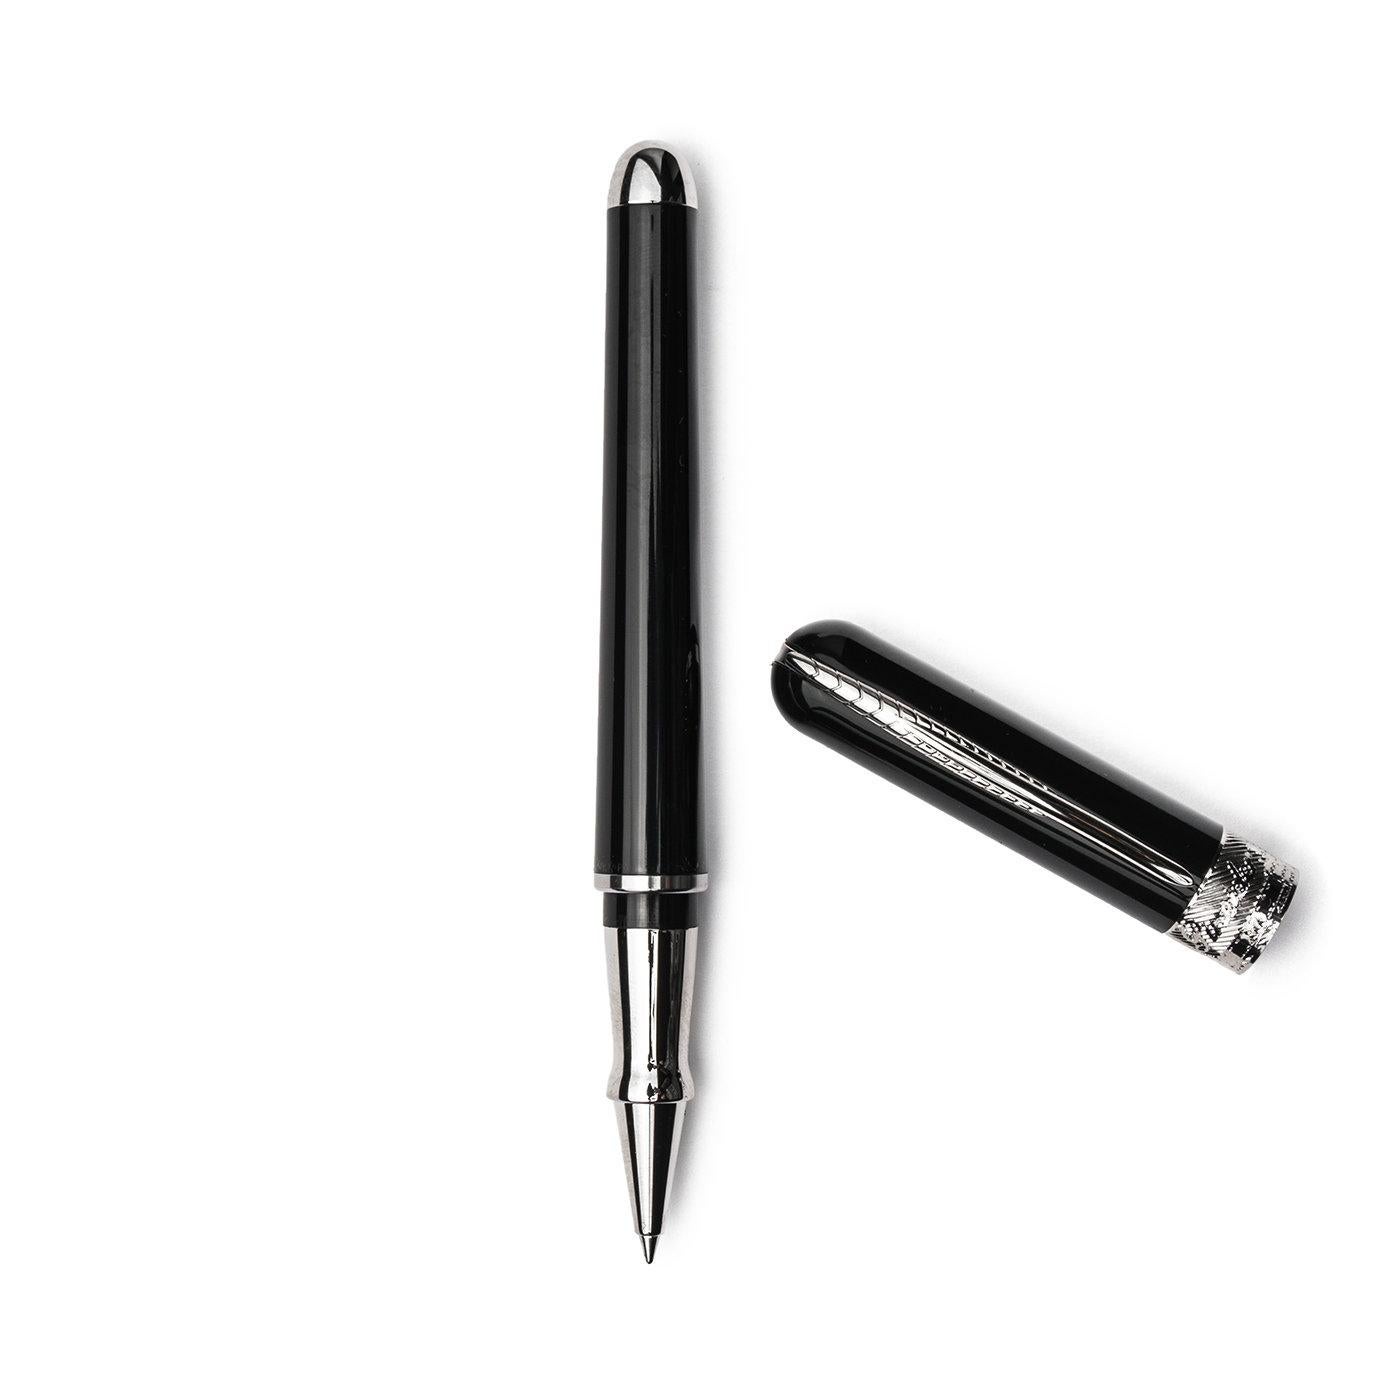 Ce stylo-plume ultra-élégant se distingue par un corps noir en UltraResin, un matériau spécial mis au point par Pineider mélangeant nacre et résine pour une meilleure résistance aux intempéries et une plus grande durabilité. Les pièces du stylo sont